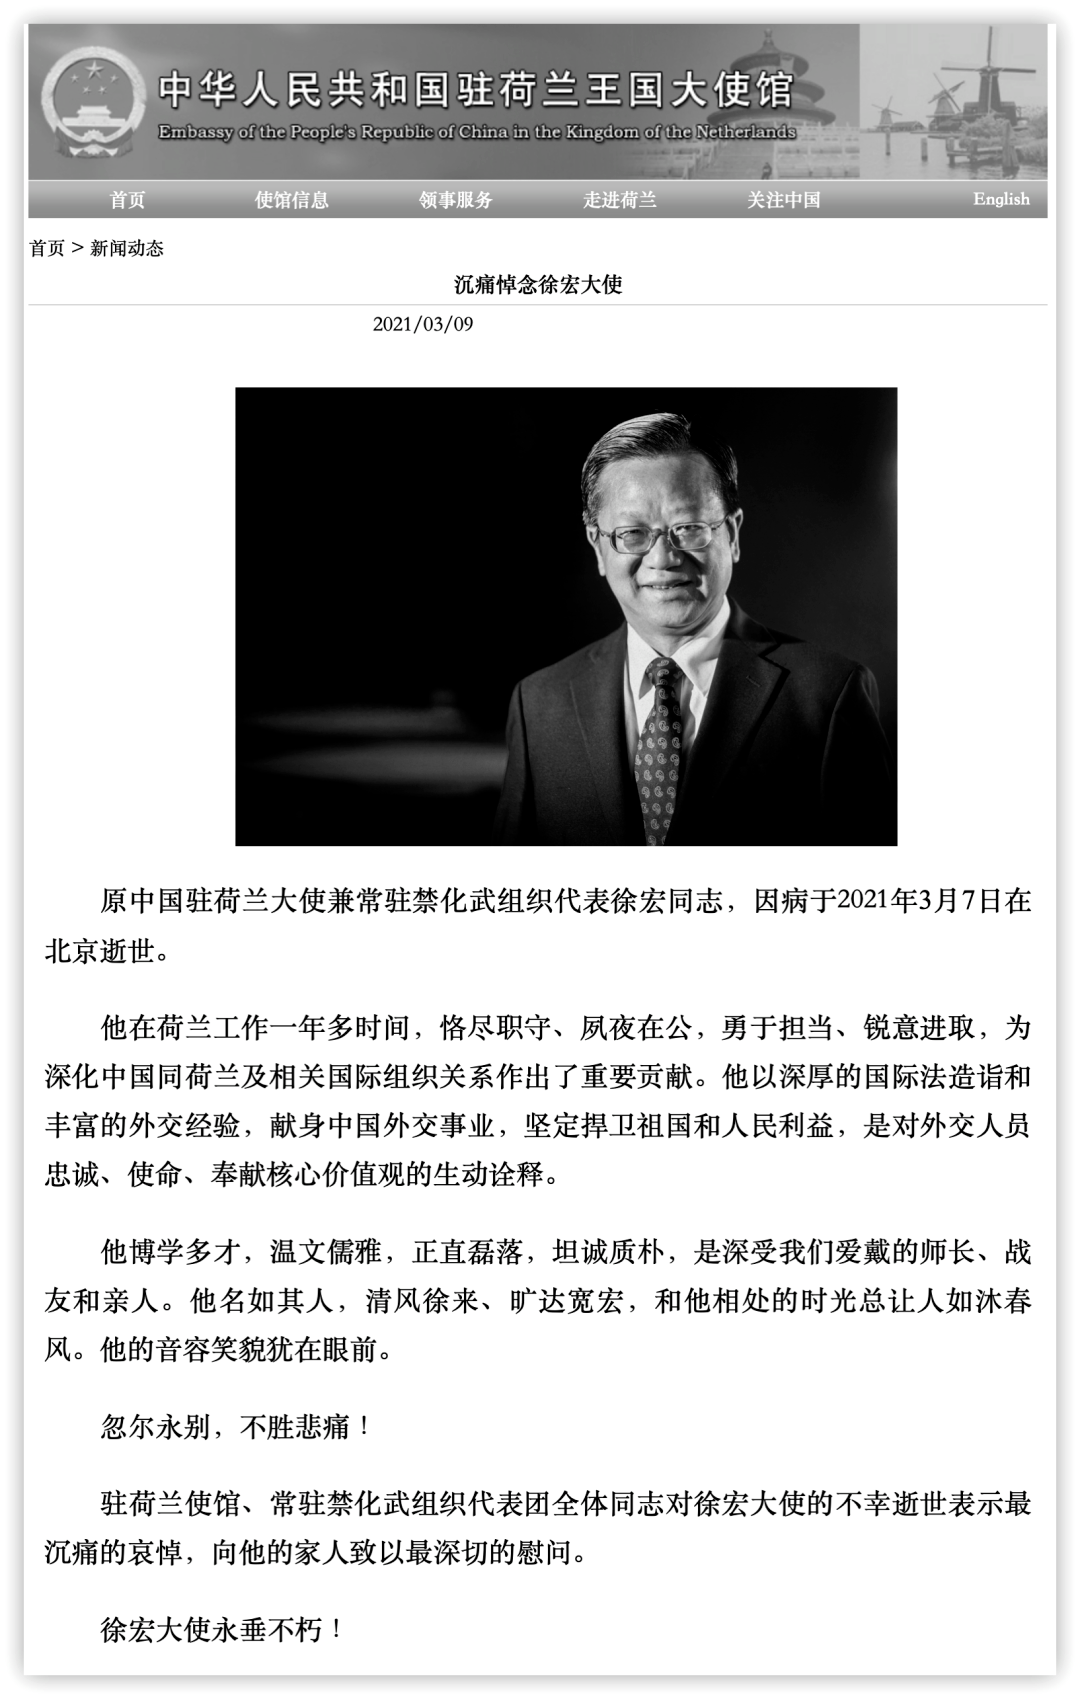 中国前驻荷兰大使徐宏逝世 半年前卸任回京 工作